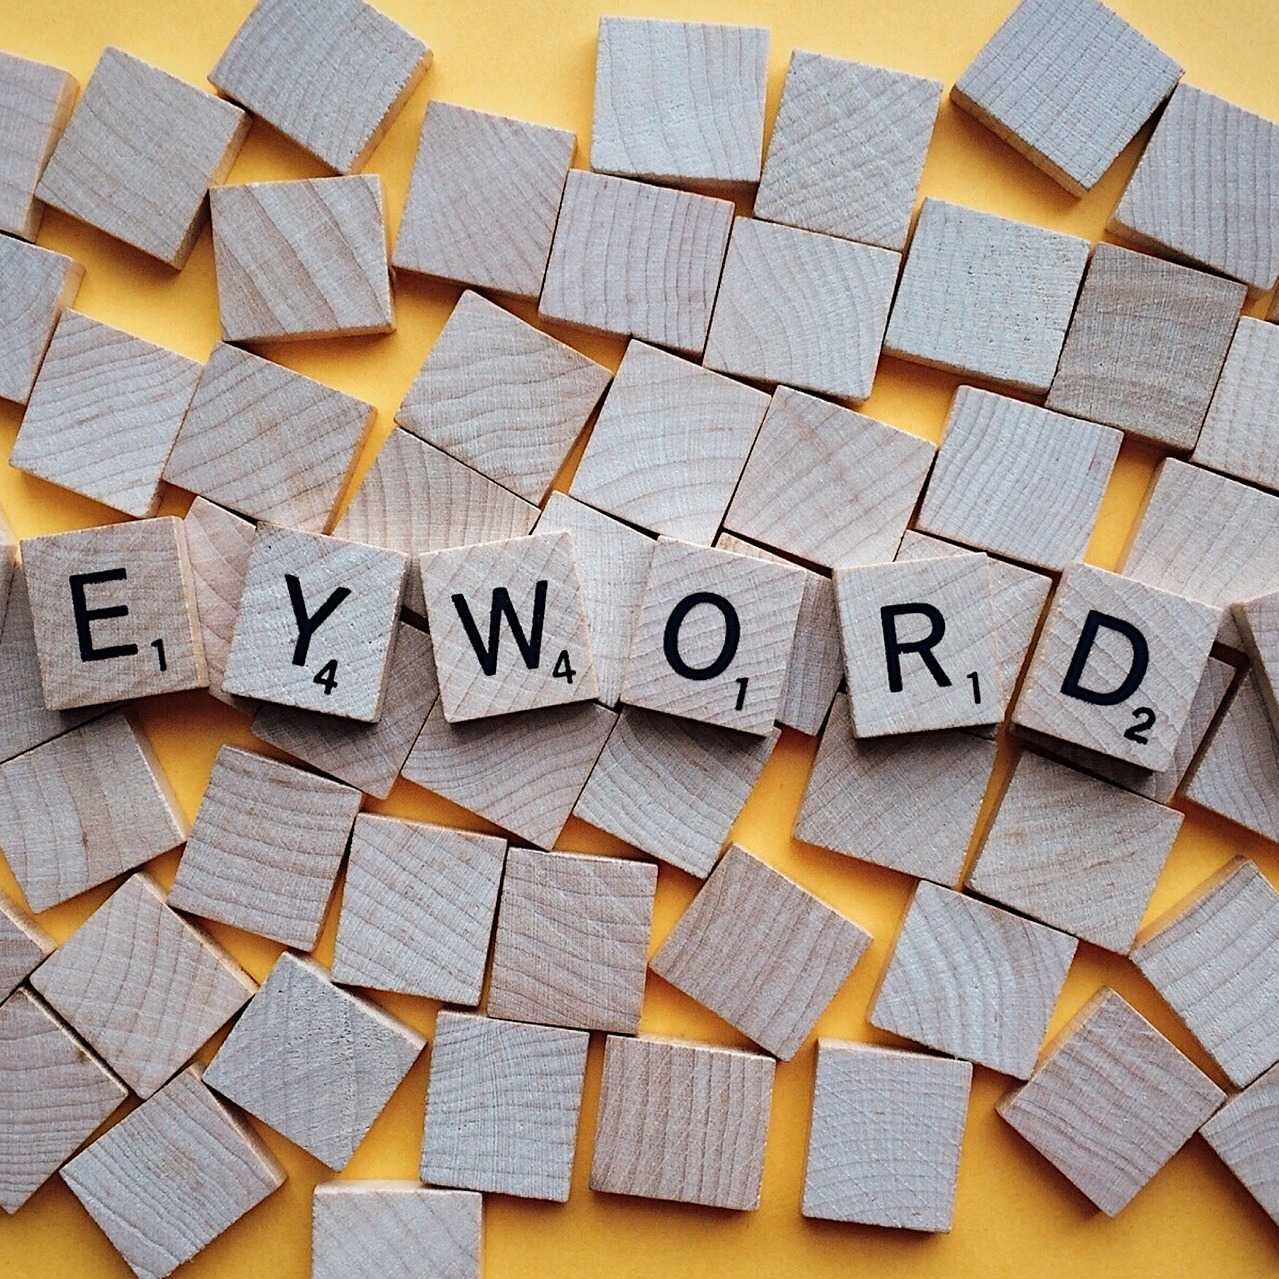 Английският термин Keyword означава една или повече думи, които потребителите пишат в търсачките, за да намерят и консултират уебсайтовете, които ги интересуват